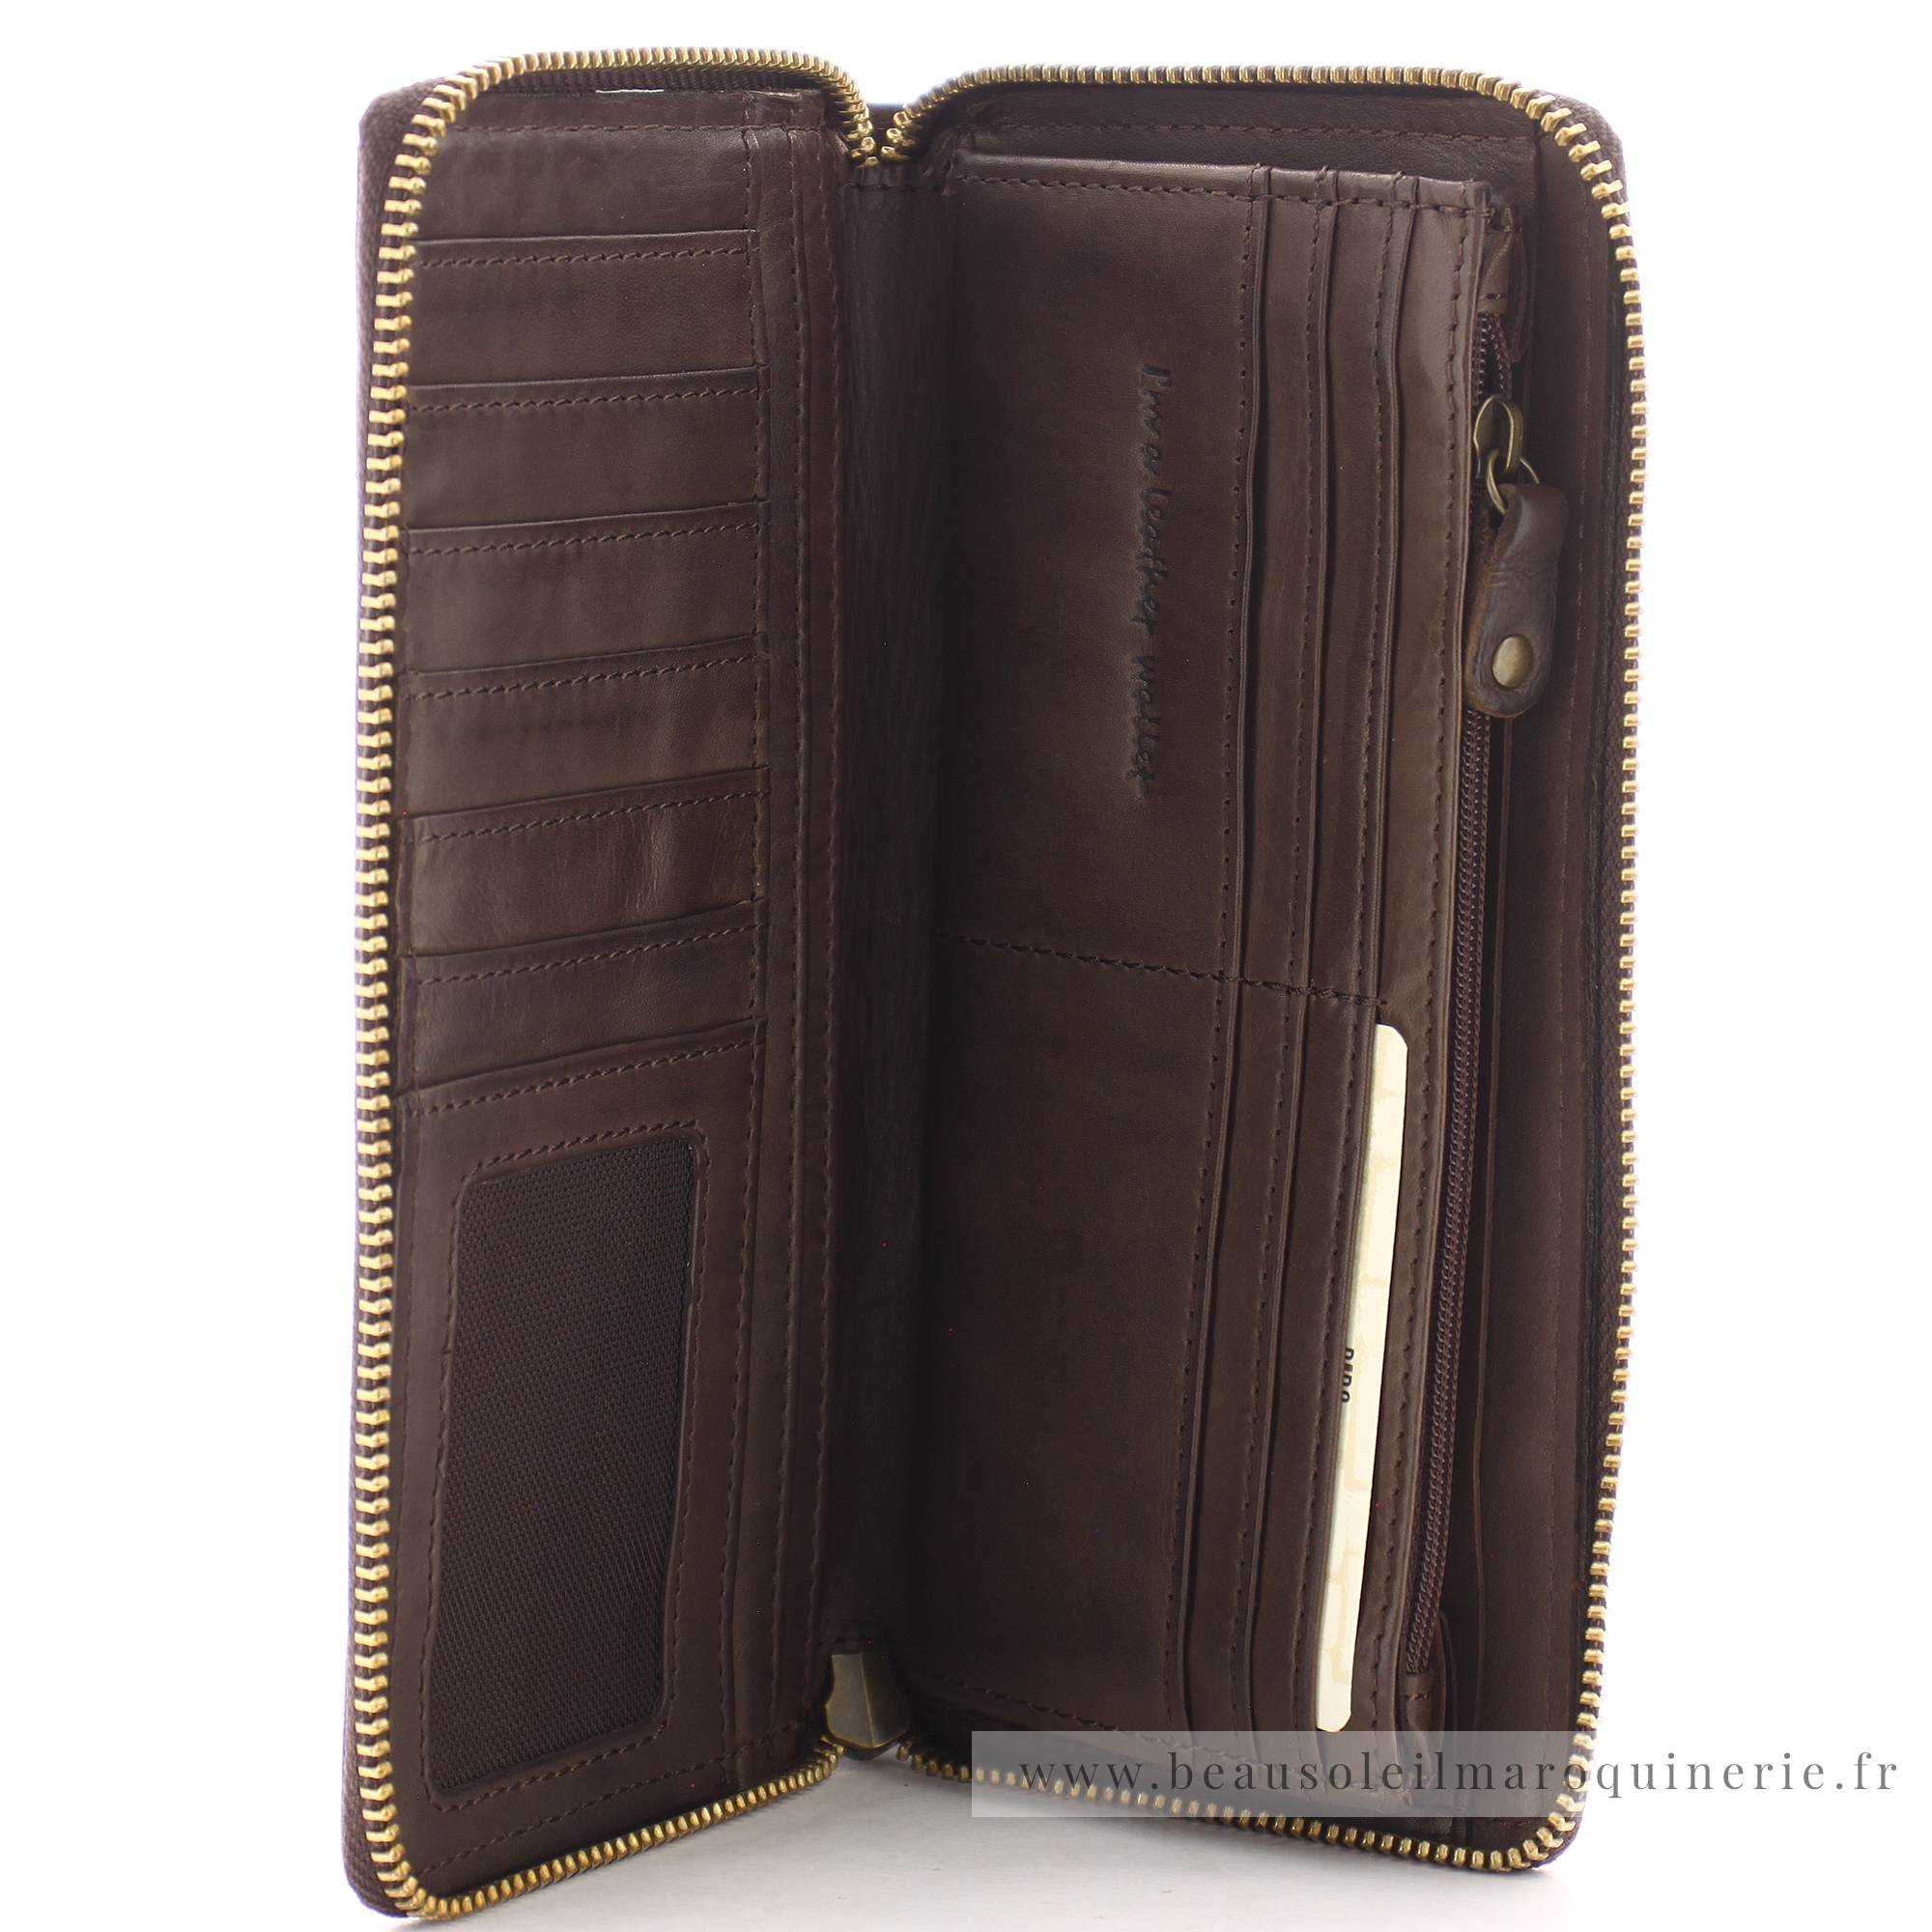 Grand portefeuille zippé Biba Boston BT10 MARRON de couleur marron, vue intérieur